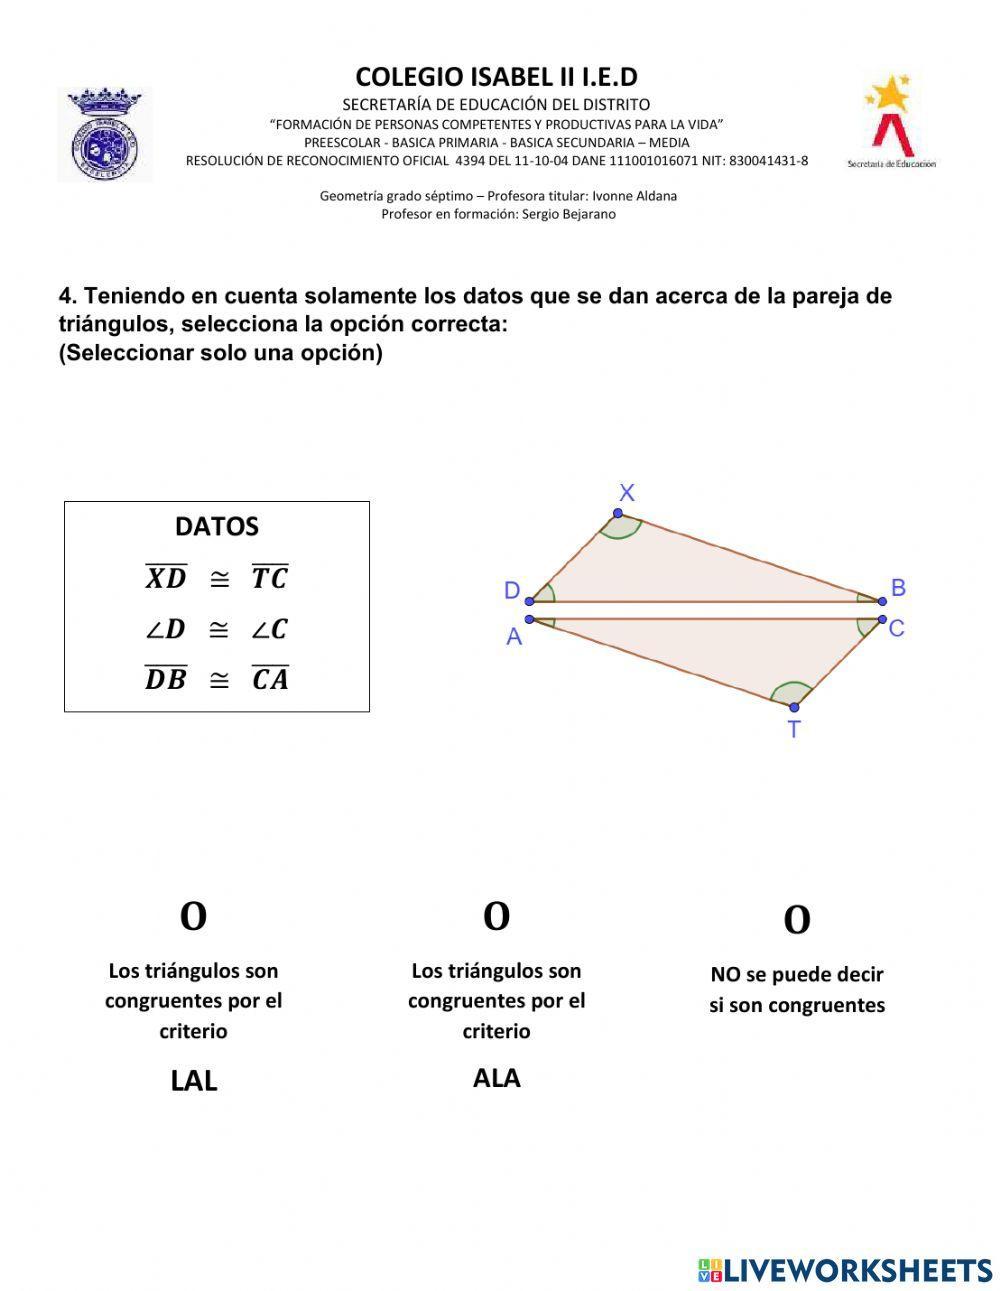 Criterios de Congruencia Triángulos 702